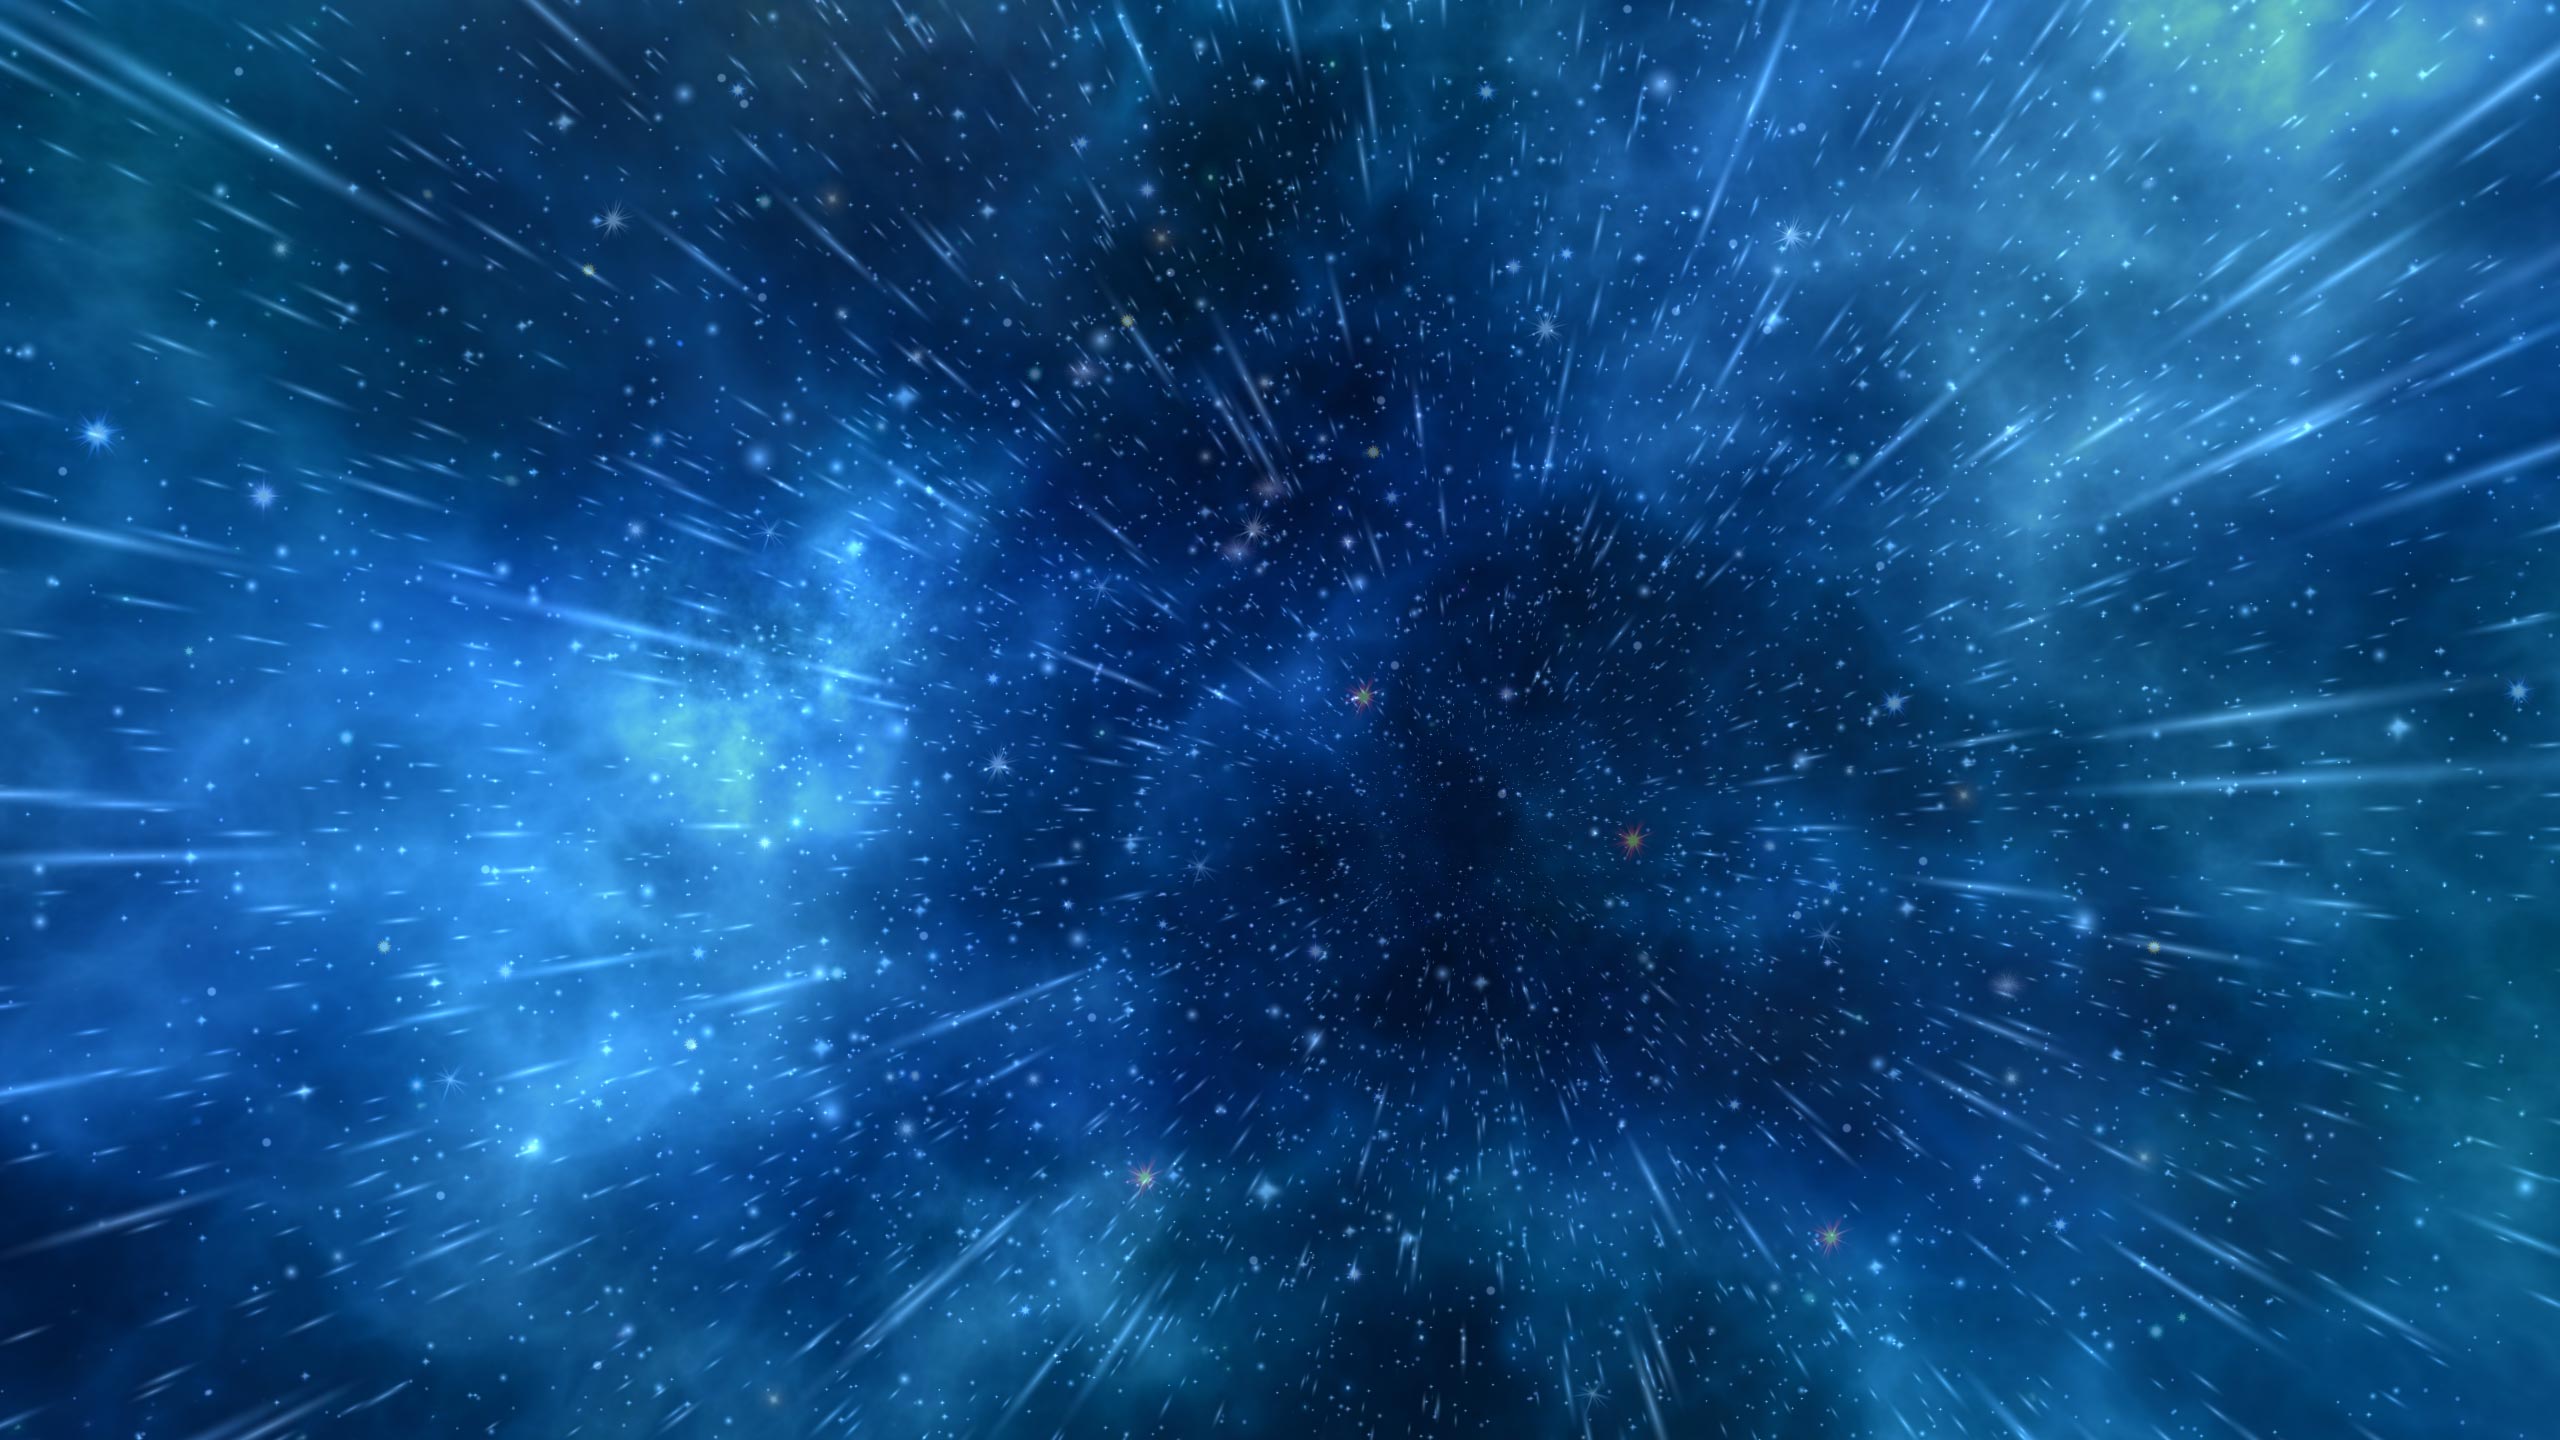 Không gian cháy nổ màu xanh là một trong những hình nền động đẹp mắt nhất được yêu thích trong thời gian gần đây. Được trang trí với hiệu ứng cháy nổ kết hợp với màu xanh lấp lánh, không gian cháy nổ màu xanh đem đến cho người dùng sự phấn khích và hứng thú trong khi khám phá giao diện máy tính